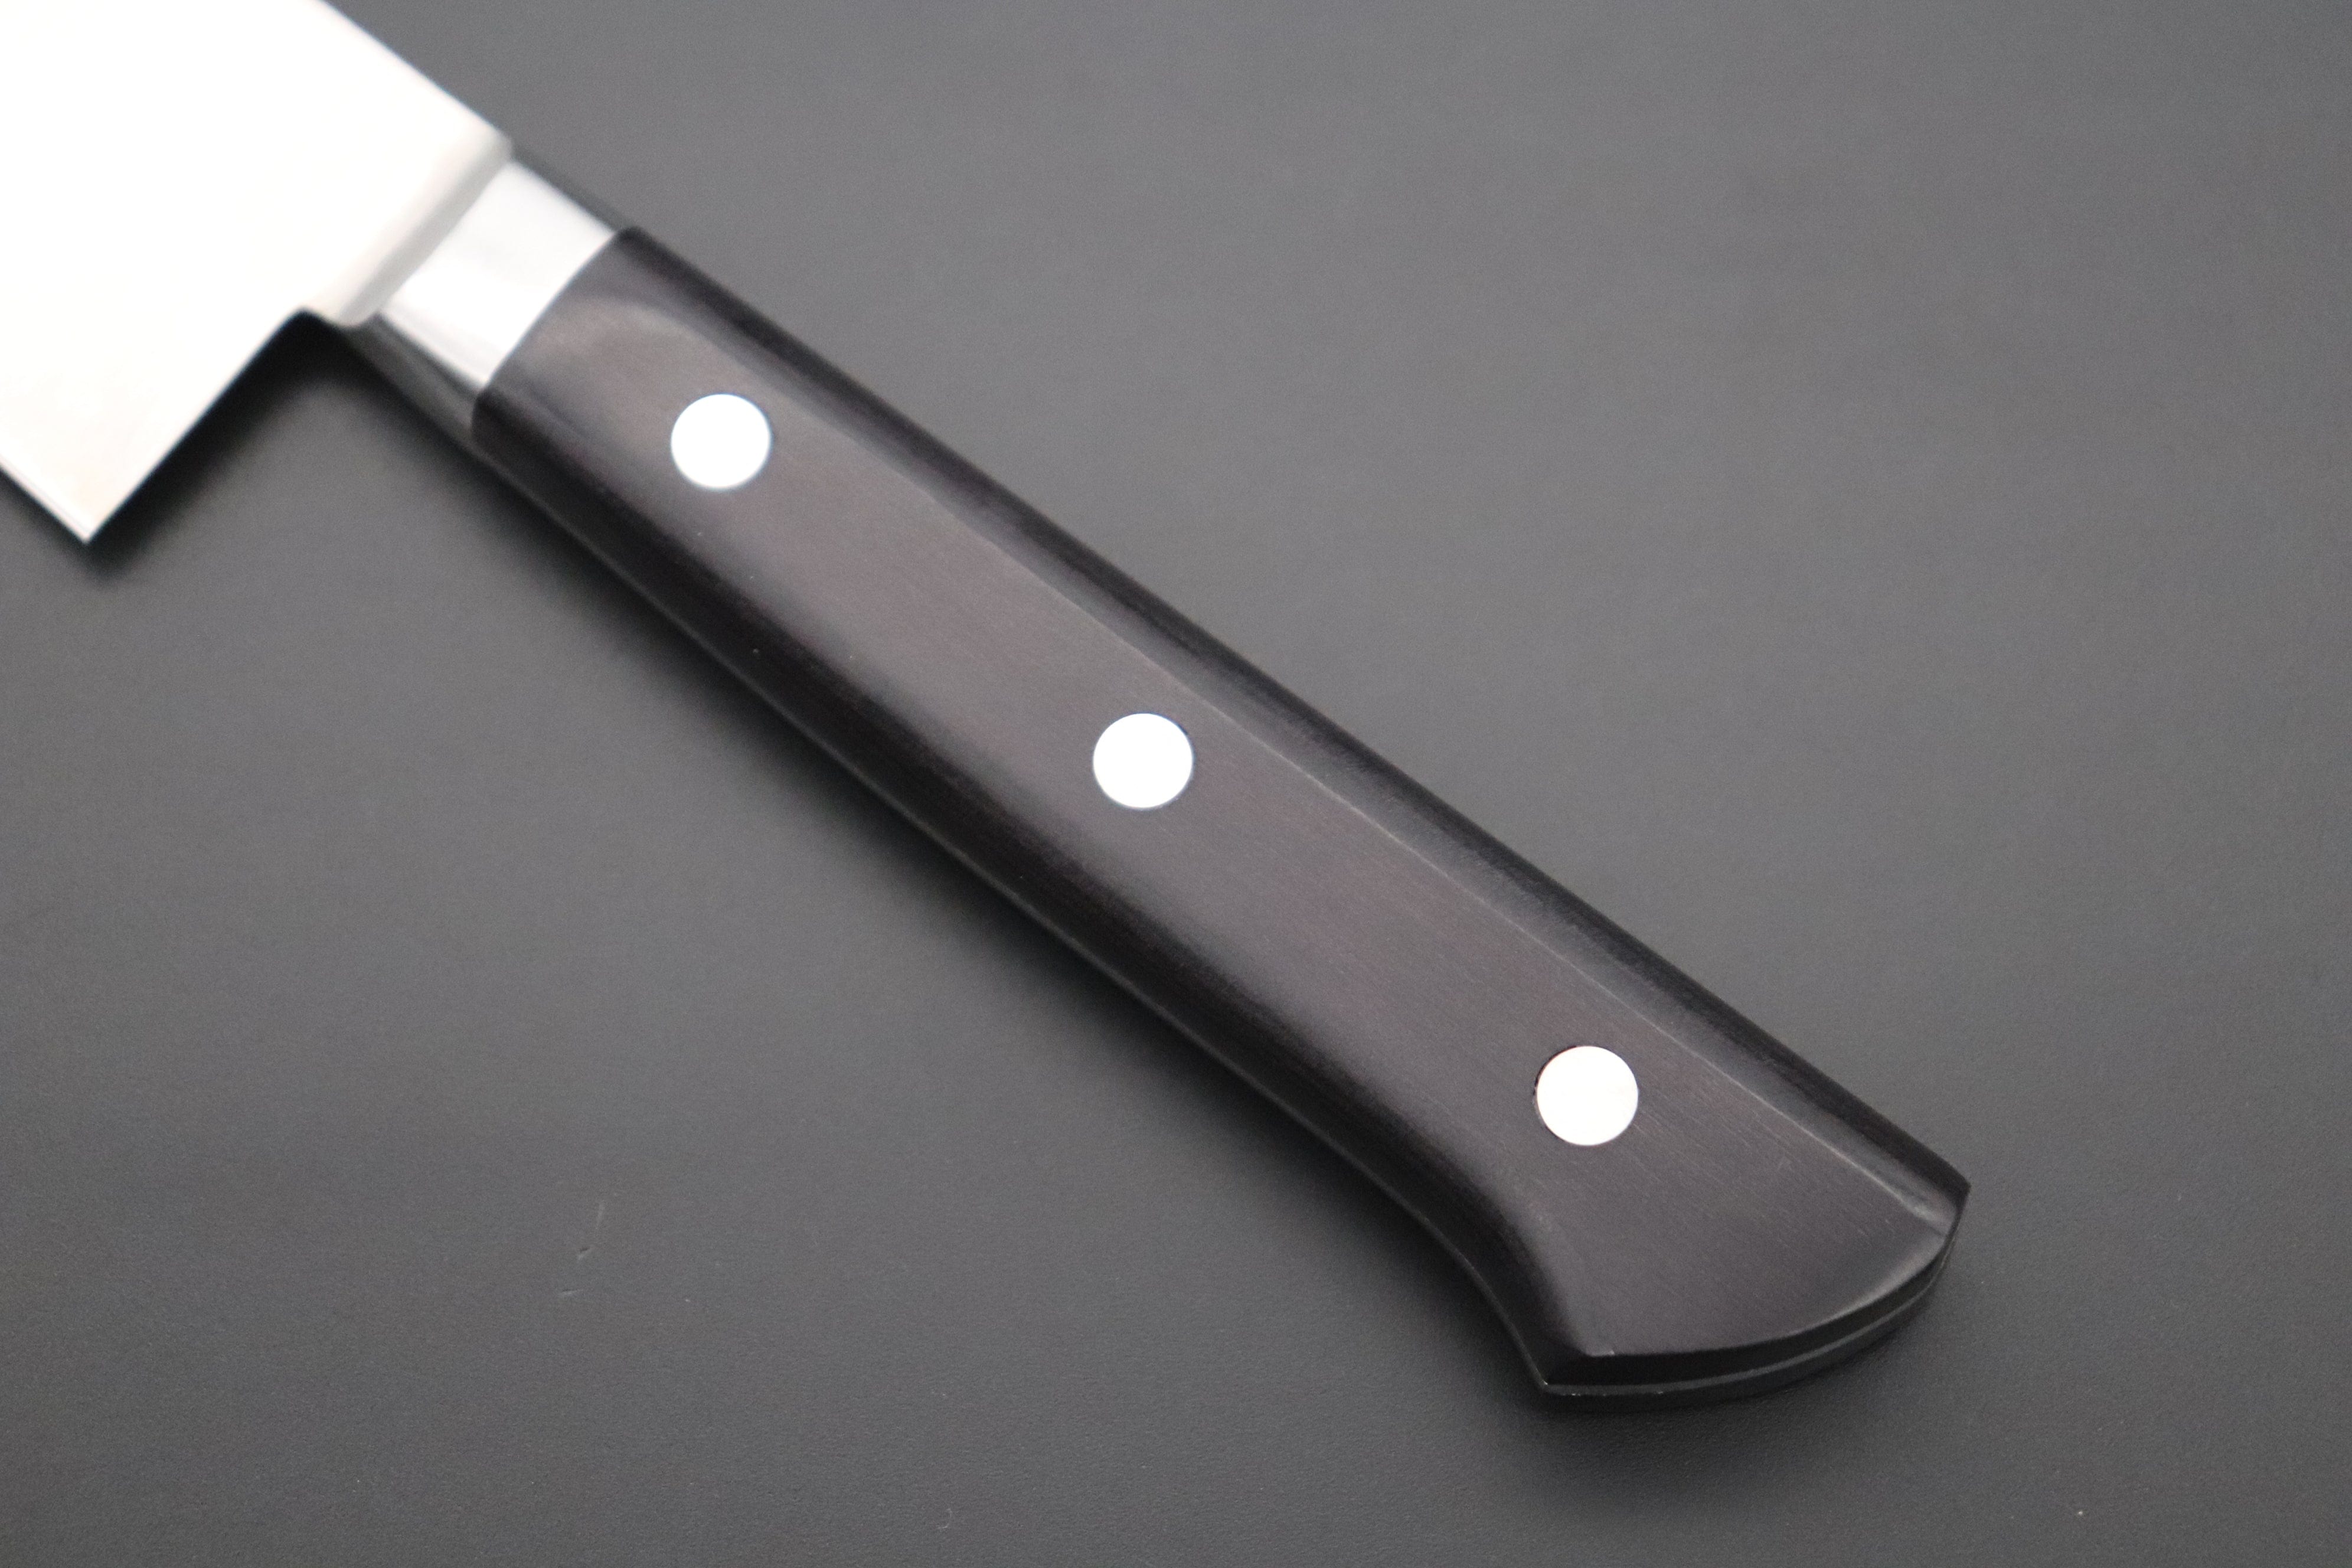 Pakka Wood Handle Knife - Fujiwara FKM Series